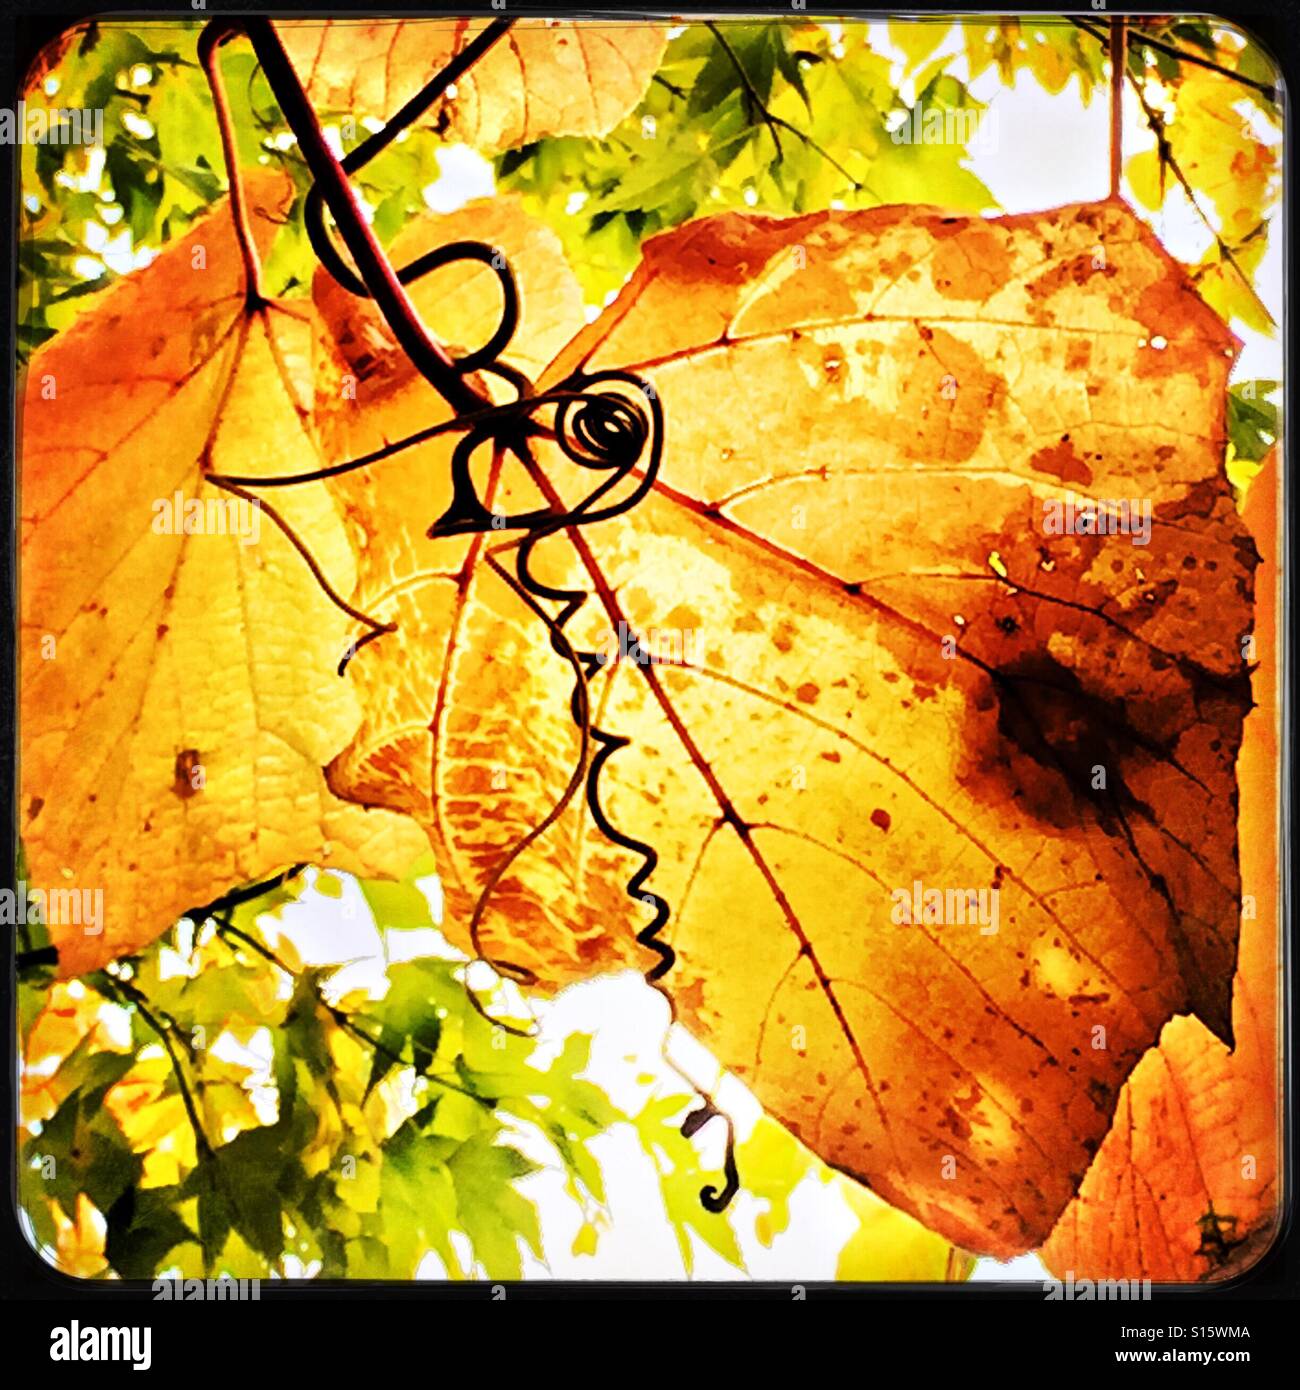 Sonnenlicht scheint durch goldene Traube Altern Blätter an einem schönen Herbsttag geben den coiling Ranken eine traumhafte Kulisse. Stockfoto